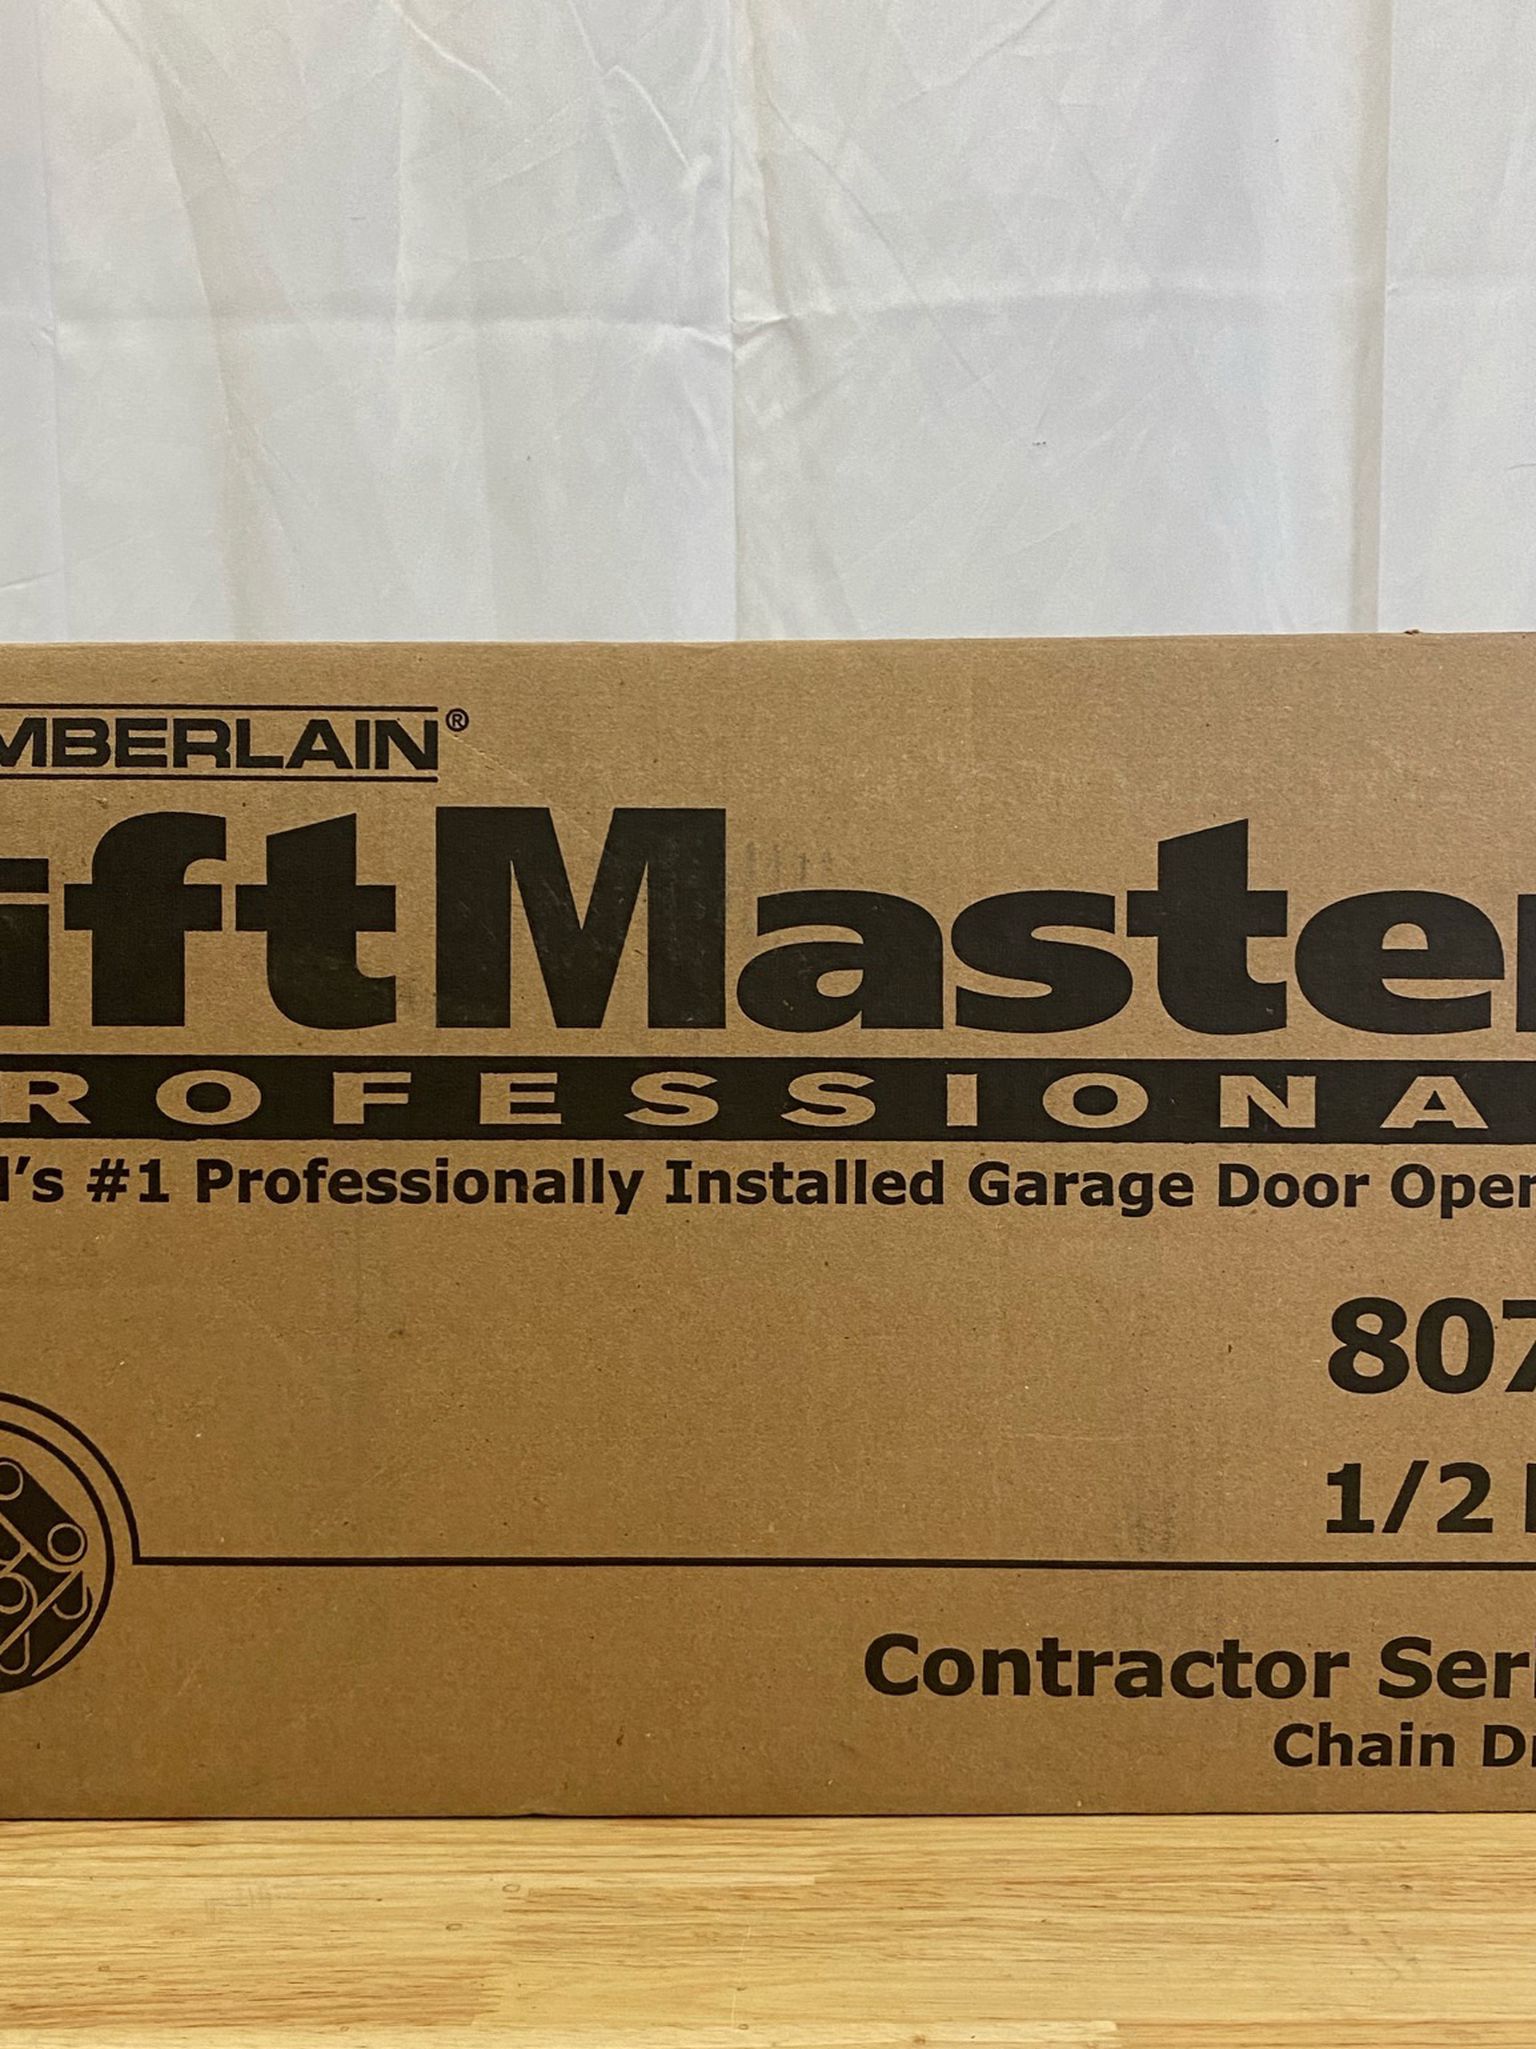 Lift Master Professionally Installed Garage Door Opener